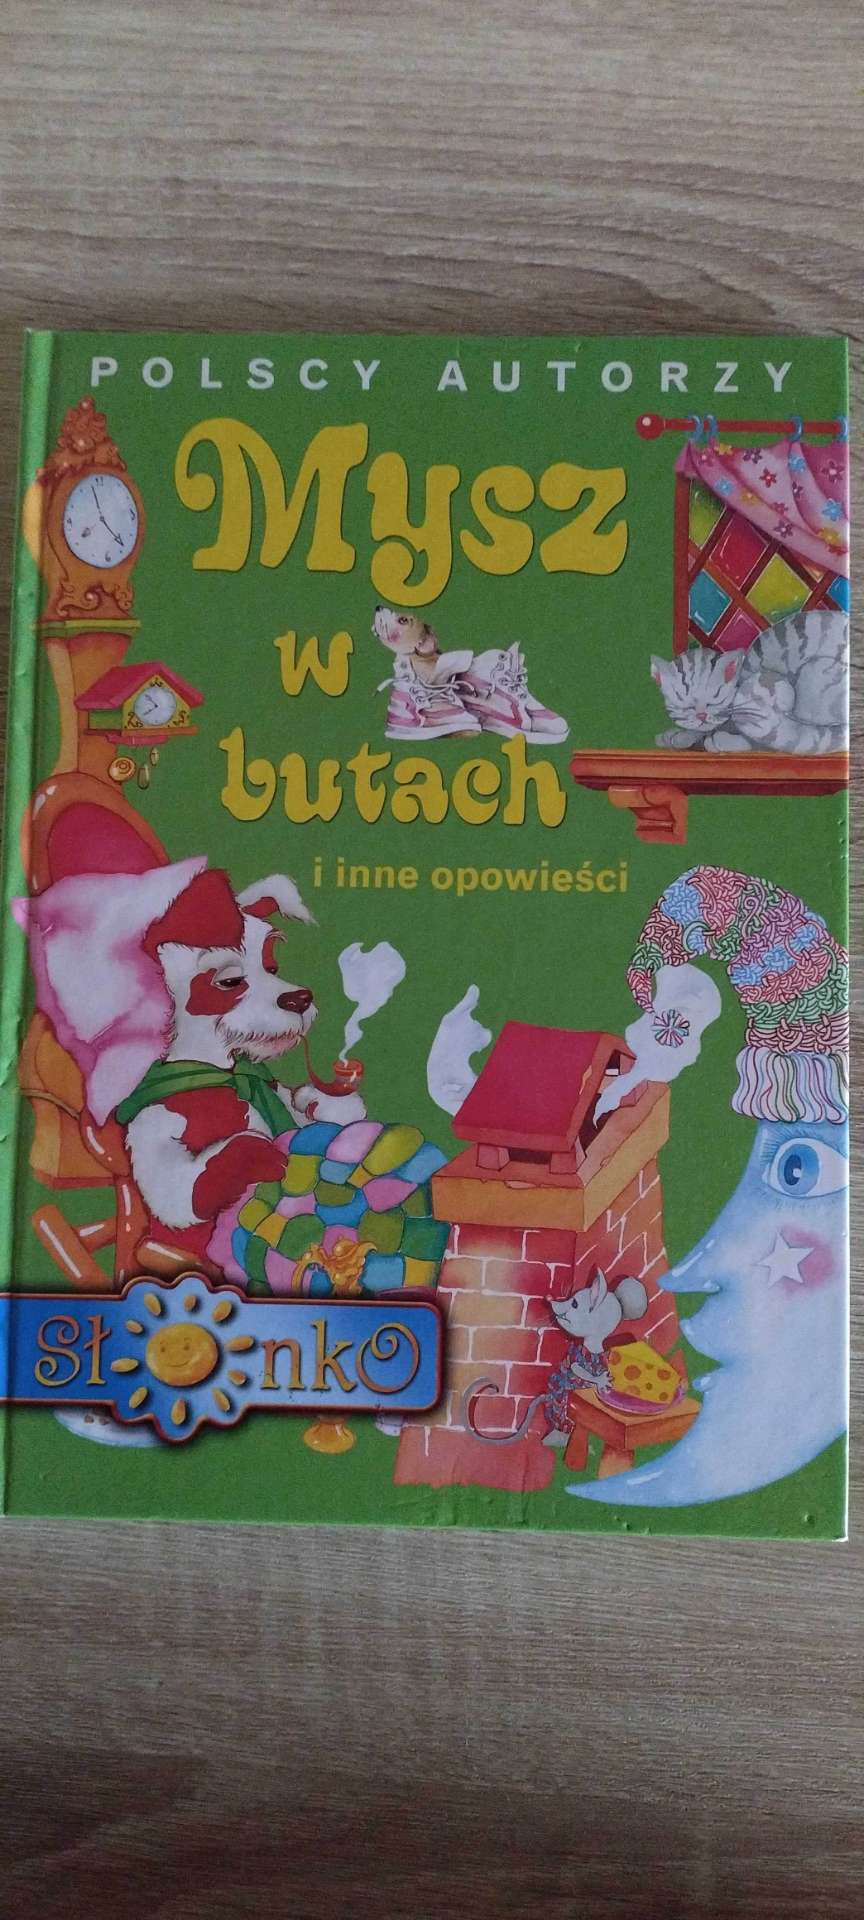 Książka  Mysz w butach i inne opowieści - Polscy autorzy.